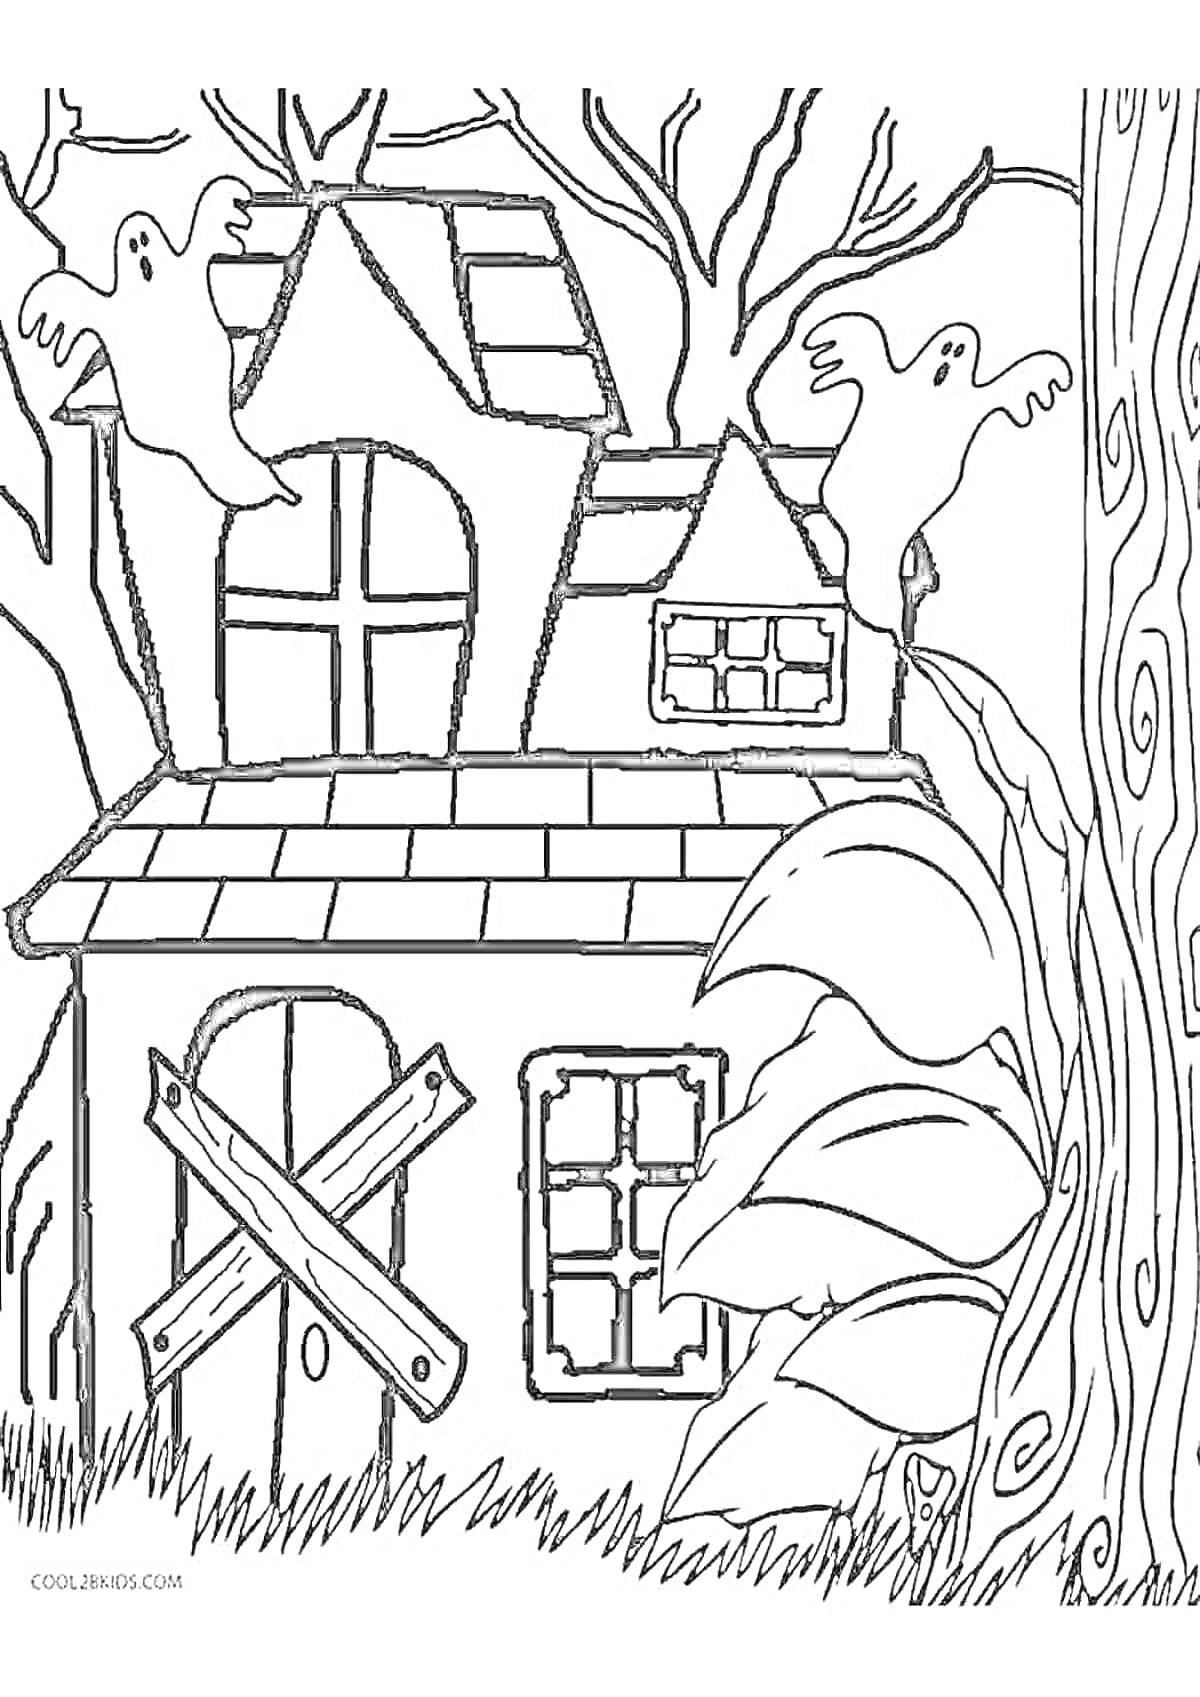 Раскраска Заброшенный дом с призраками, окнами с решетками и деревьями вокруг